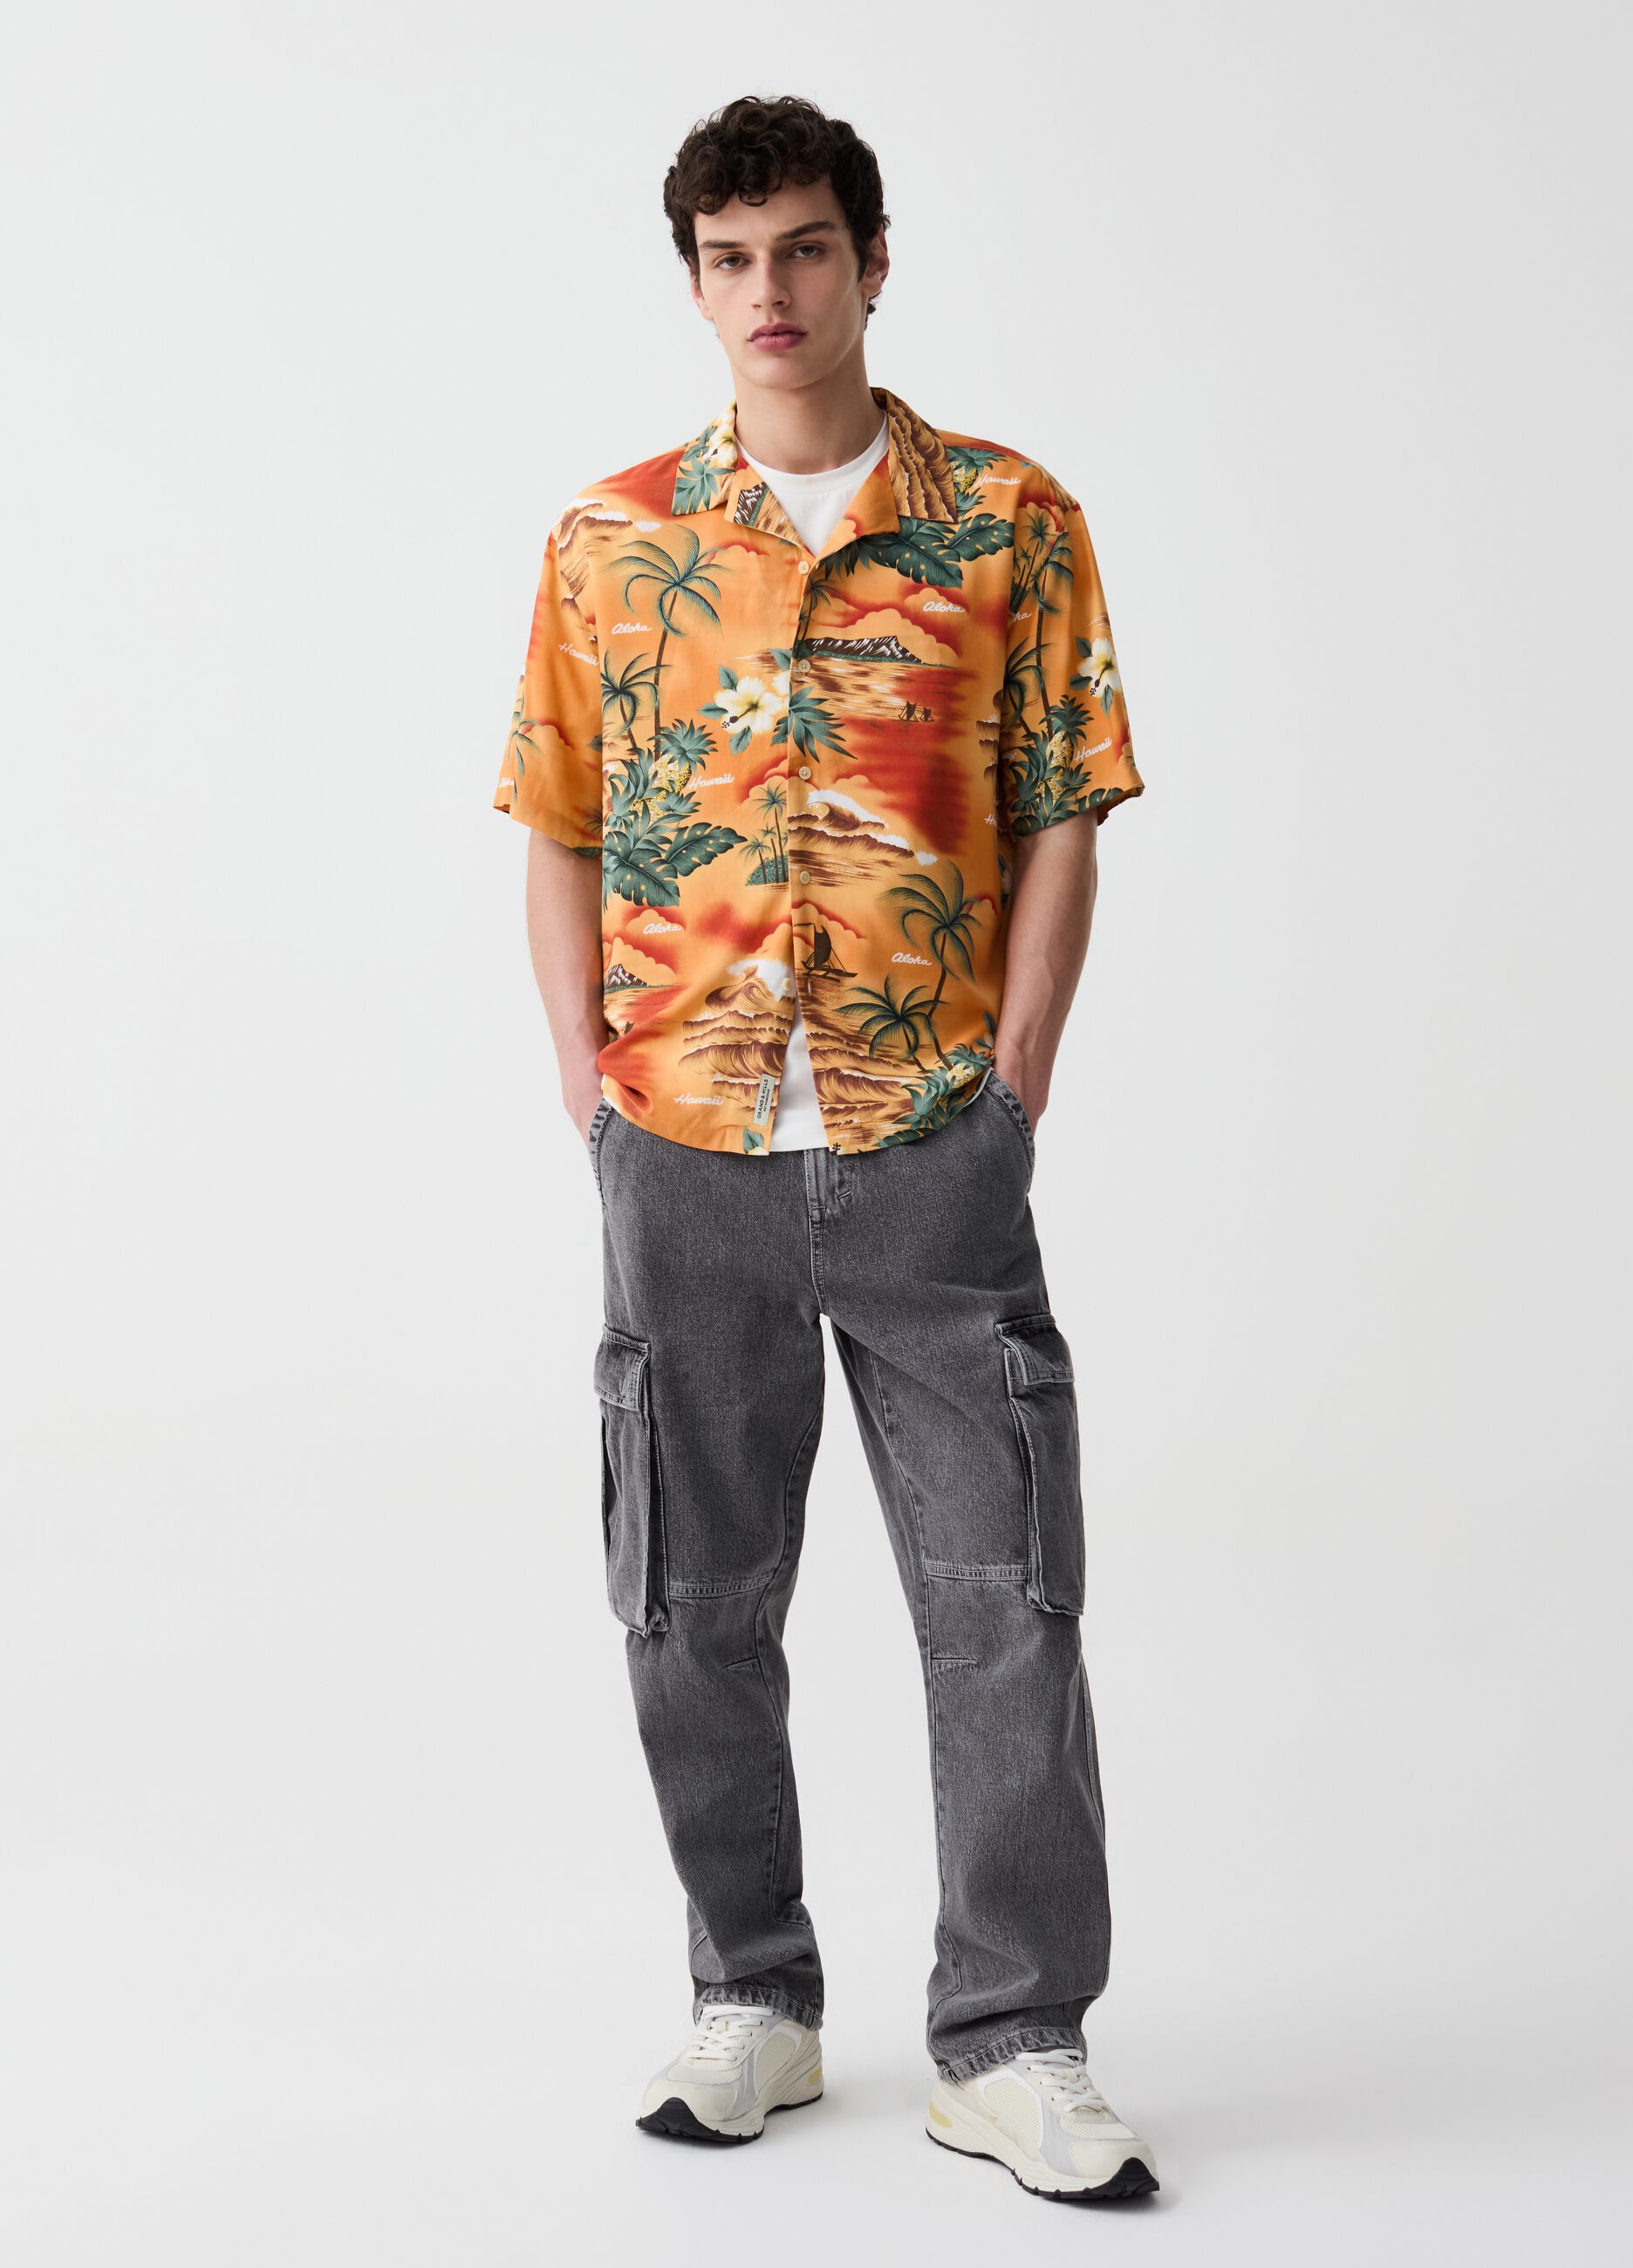 Short-sleeved shirt with Hawaiian print